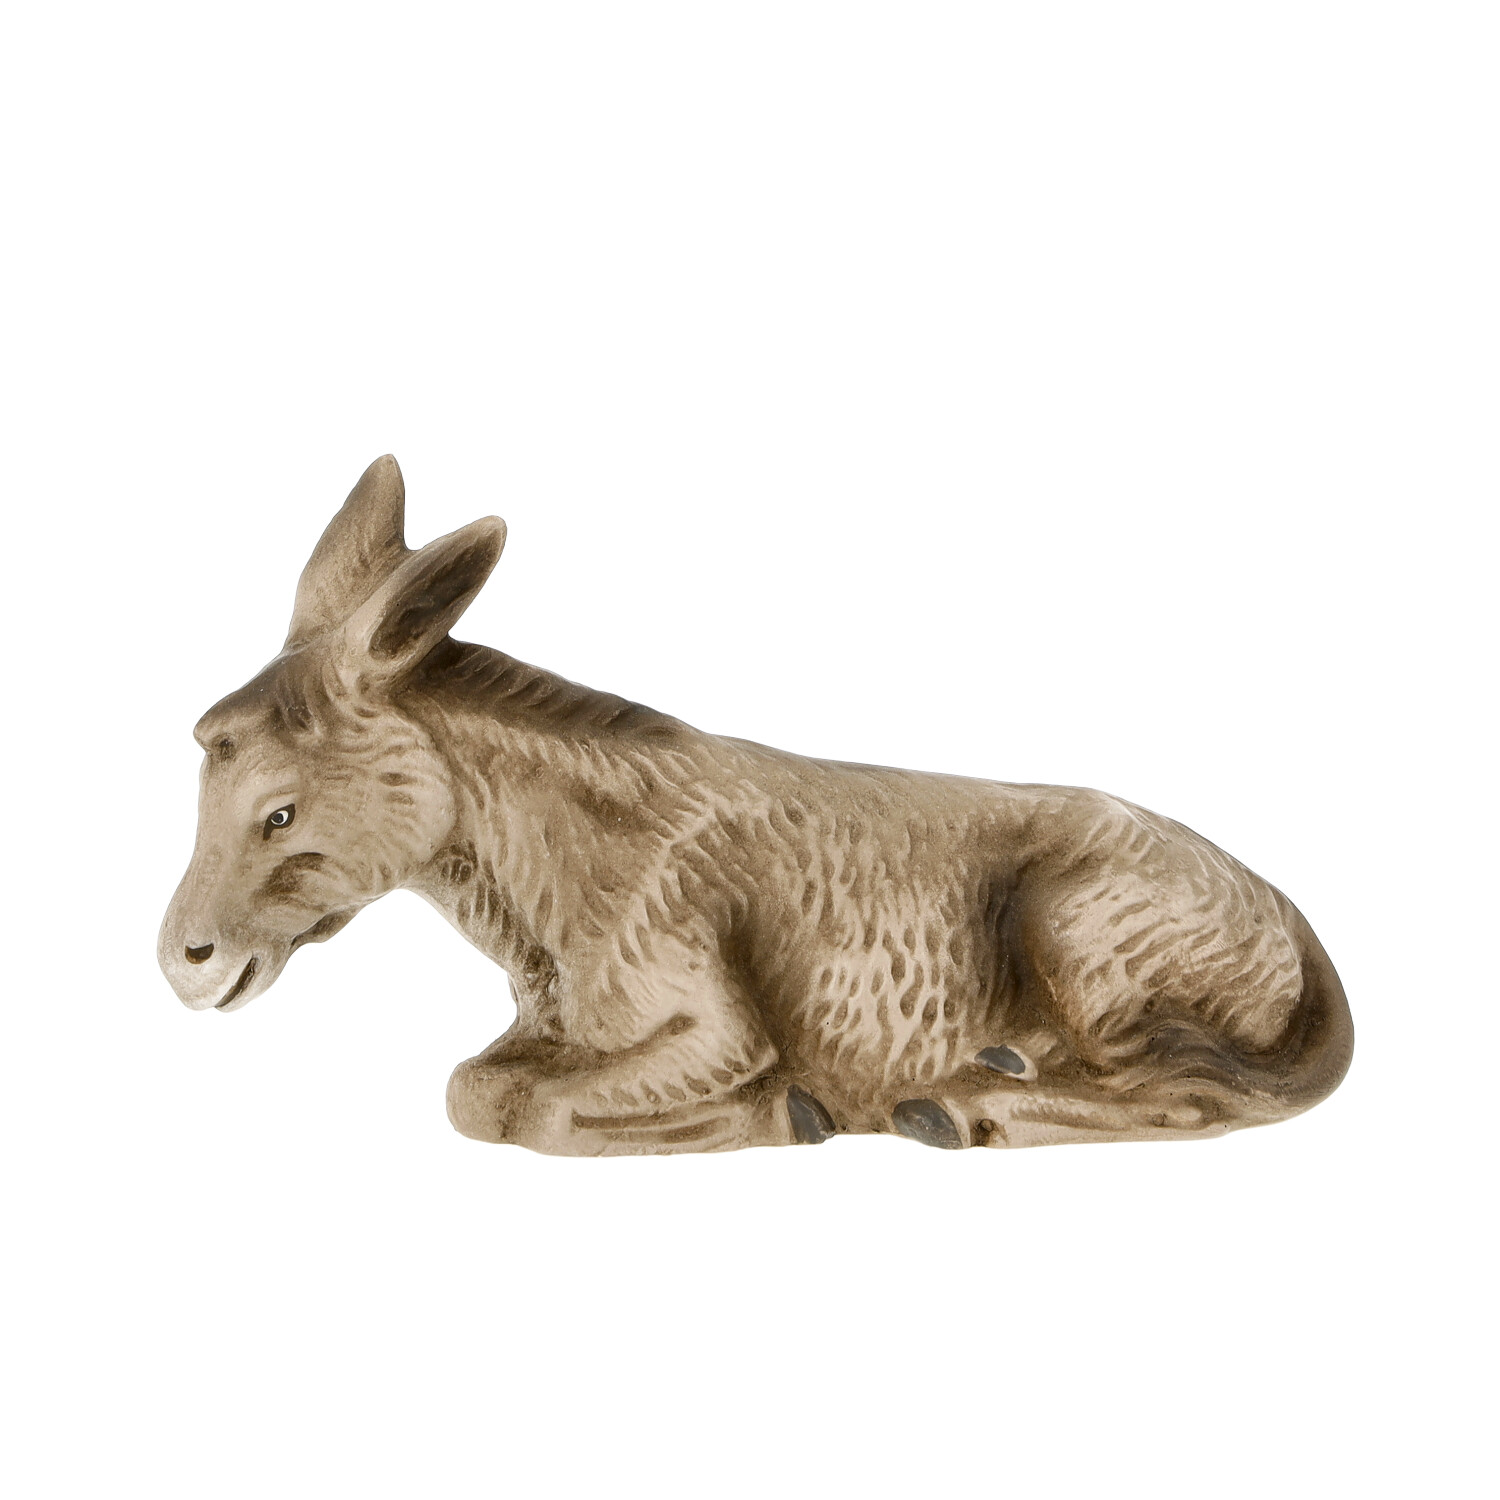 Lying donkey - Marolin Nativity figure - made in Germany